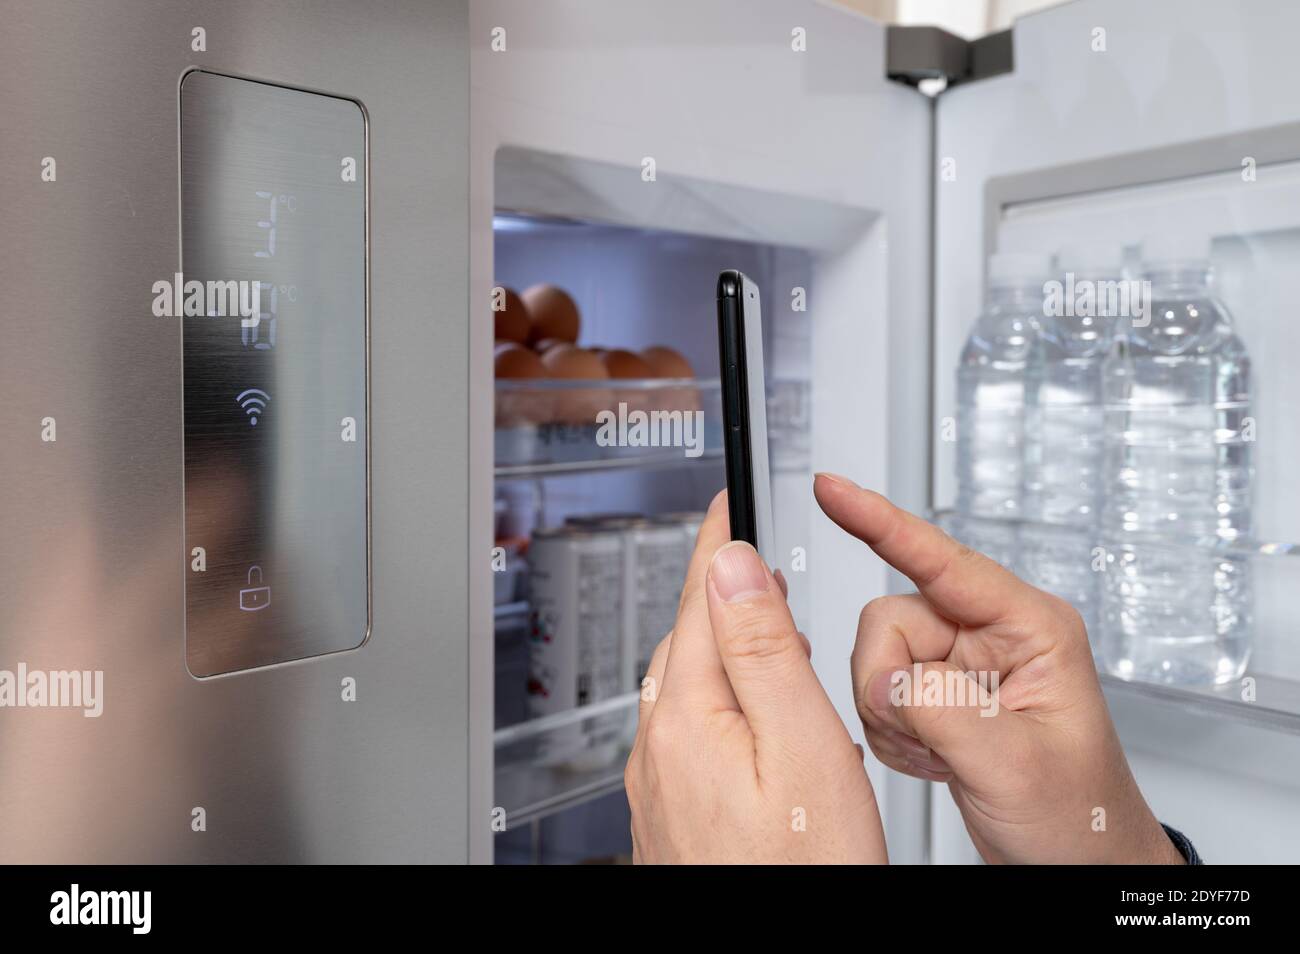 La main de l'homme qui contrôle le réfrigérateur avec son smartphone. Concept d'Internet des objets Banque D'Images